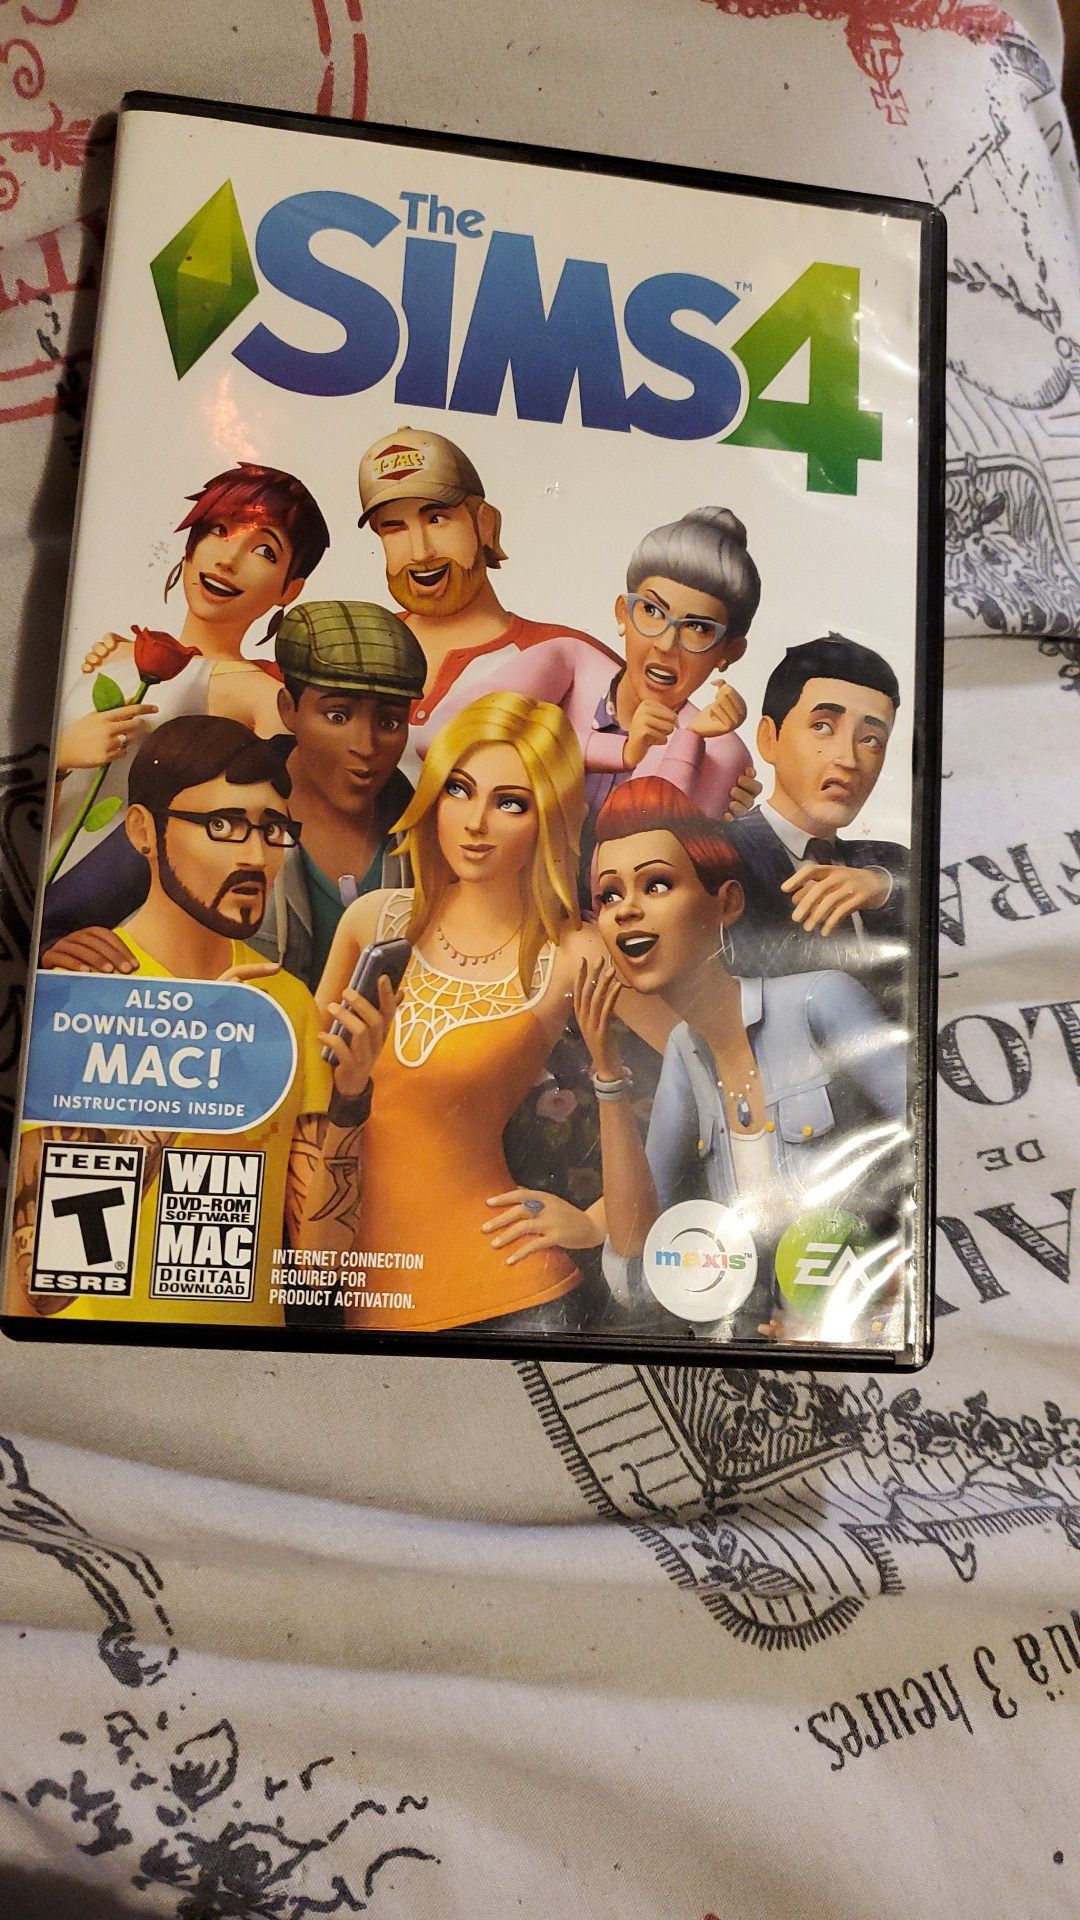 Sims 4 PC or Mac